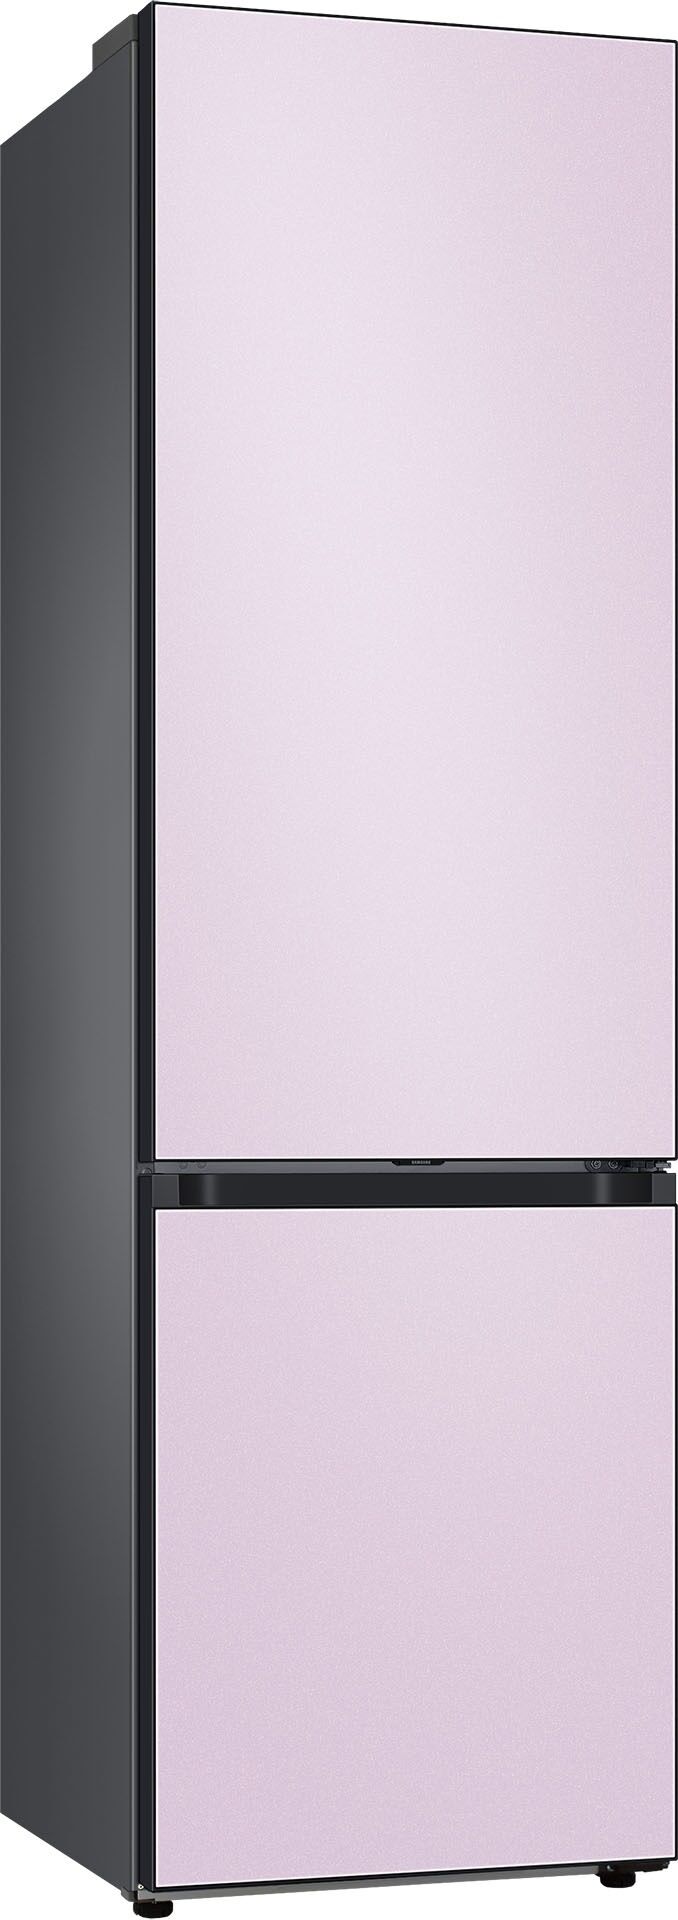 Samsung Kühl-/Gefrierkombination, Bespoke, RL38A6B0DCL, 203 cm hoch, 59,5 breit D (A bis G) Einheitsgröße lila Kühl-/Gefrierkombination Kühl-Gefrierkombinationen Kühlschränke Haushaltsgeräte